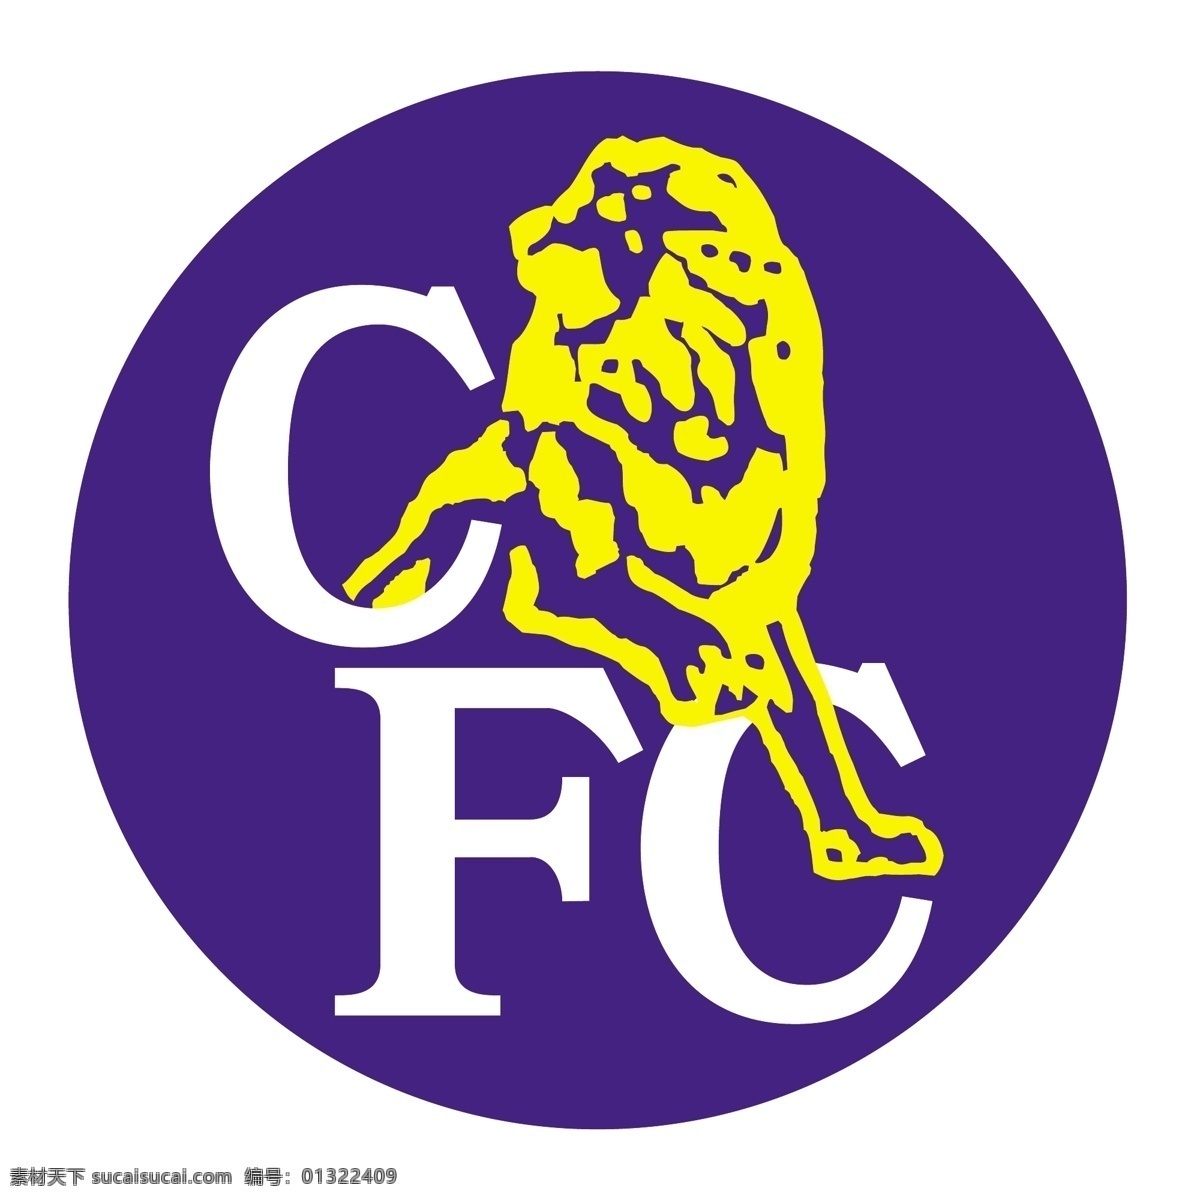 切尔西 足球 俱乐部 标识 公司 免费 品牌 品牌标识 商标 矢量标志下载 免费矢量标识 矢量 psd源文件 logo设计